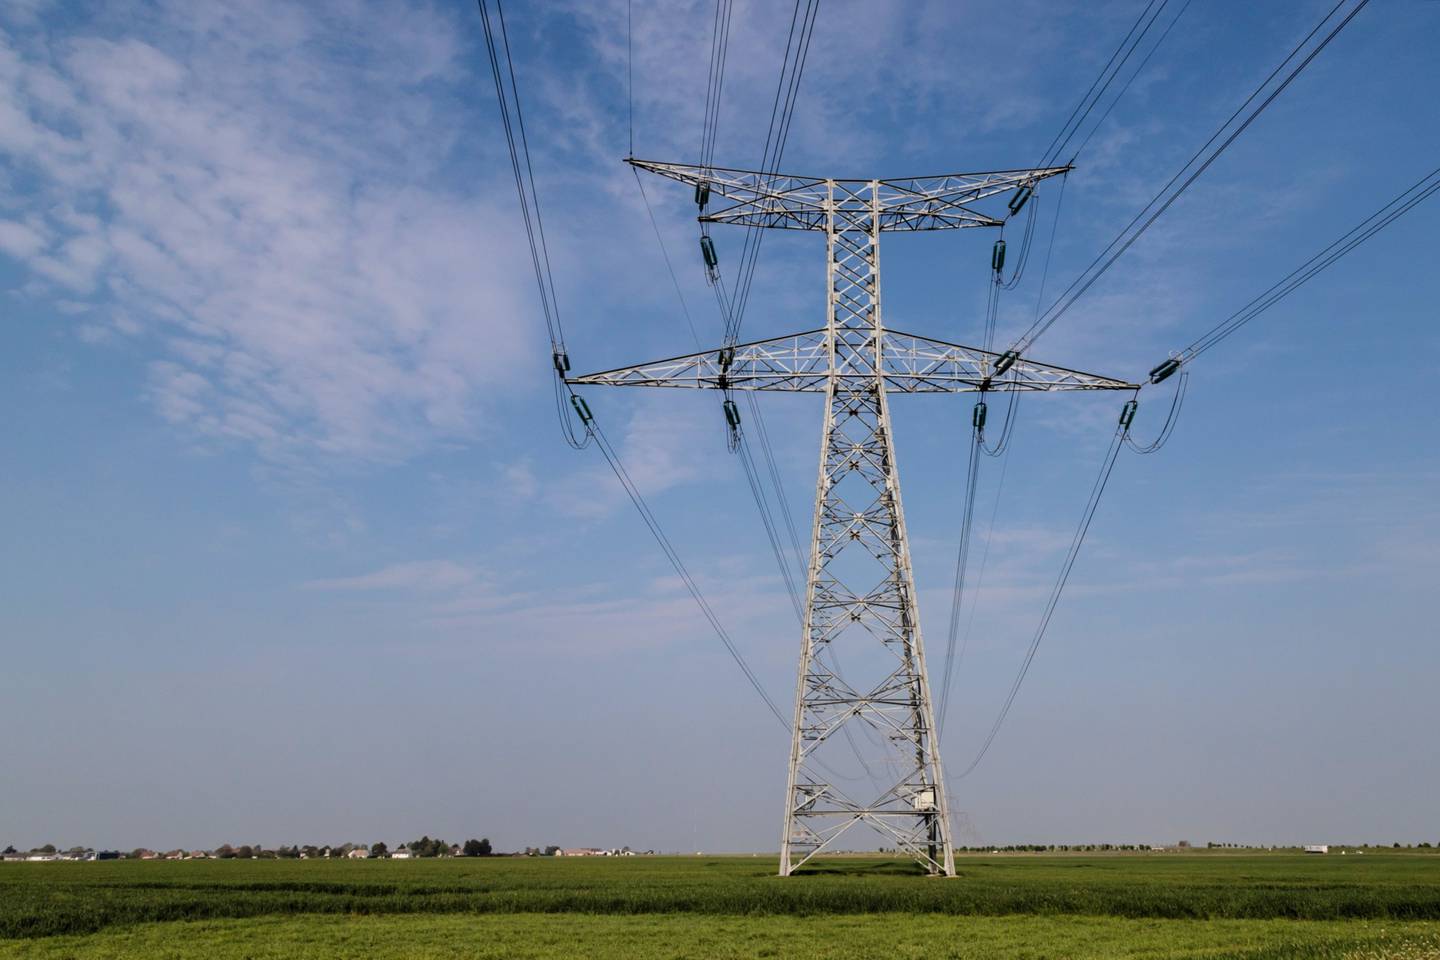 Líneas eléctricas de alta tensión atraviesan campos agrícolas en Laas, Francia, el martes 3 de mayo de 2022.  Fotógrafa: Anita Pouchard Serra/Bloomberg